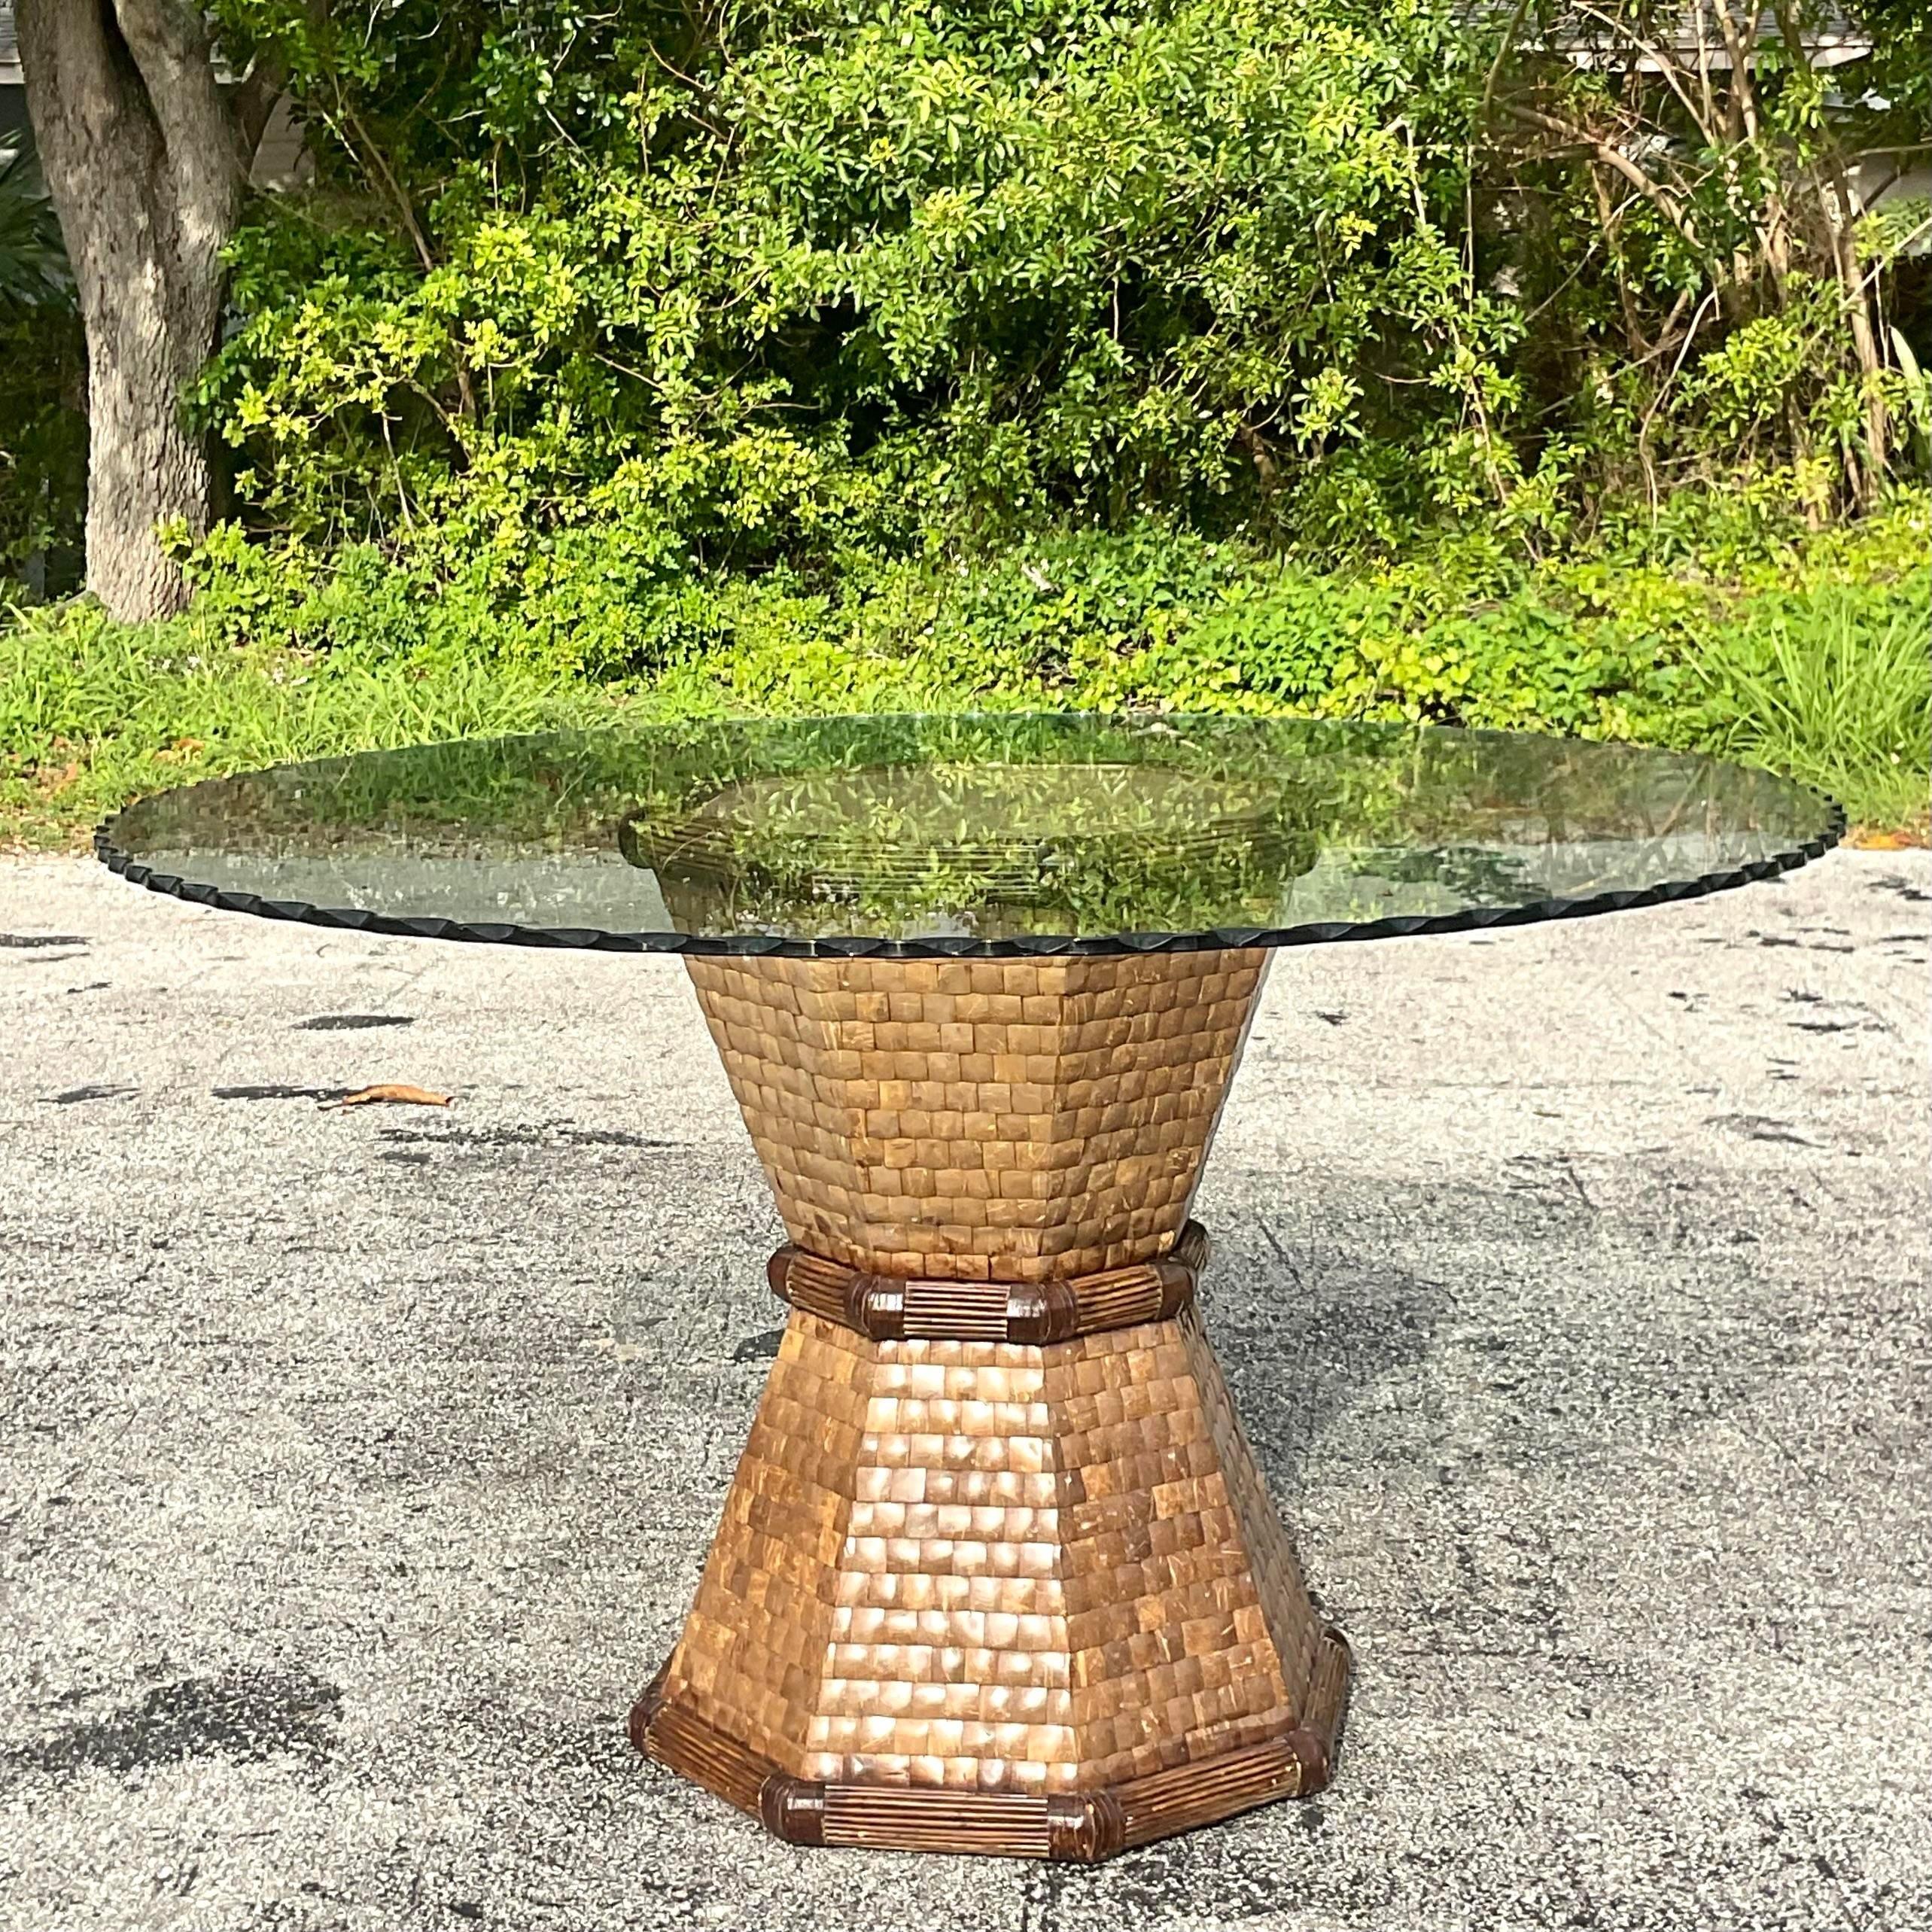 Verleihen Sie Ihrem Raum eklektischen Charme mit diesem Vintage-Tischsockel aus mosaikartigen Kokosnussschalen. Seine Bohème-Ästhetik verleiht jedem Raum einen Hauch von Laune und fügt sich nahtlos in den amerikanischen Stil ein, um ein